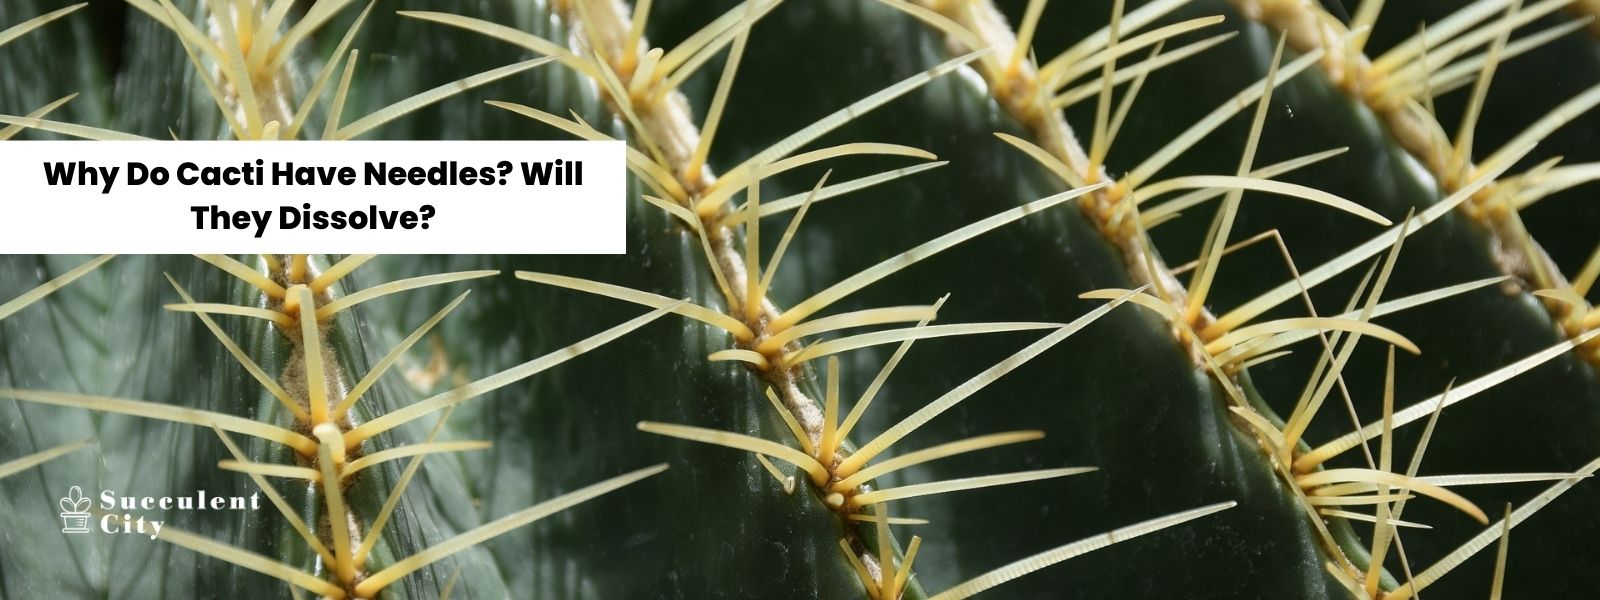 Mis consejos para cactus sin agujas – Responde también: ¿Por qué los cactus tienen agujas? ¿Se disuelven las agujas de cactus?